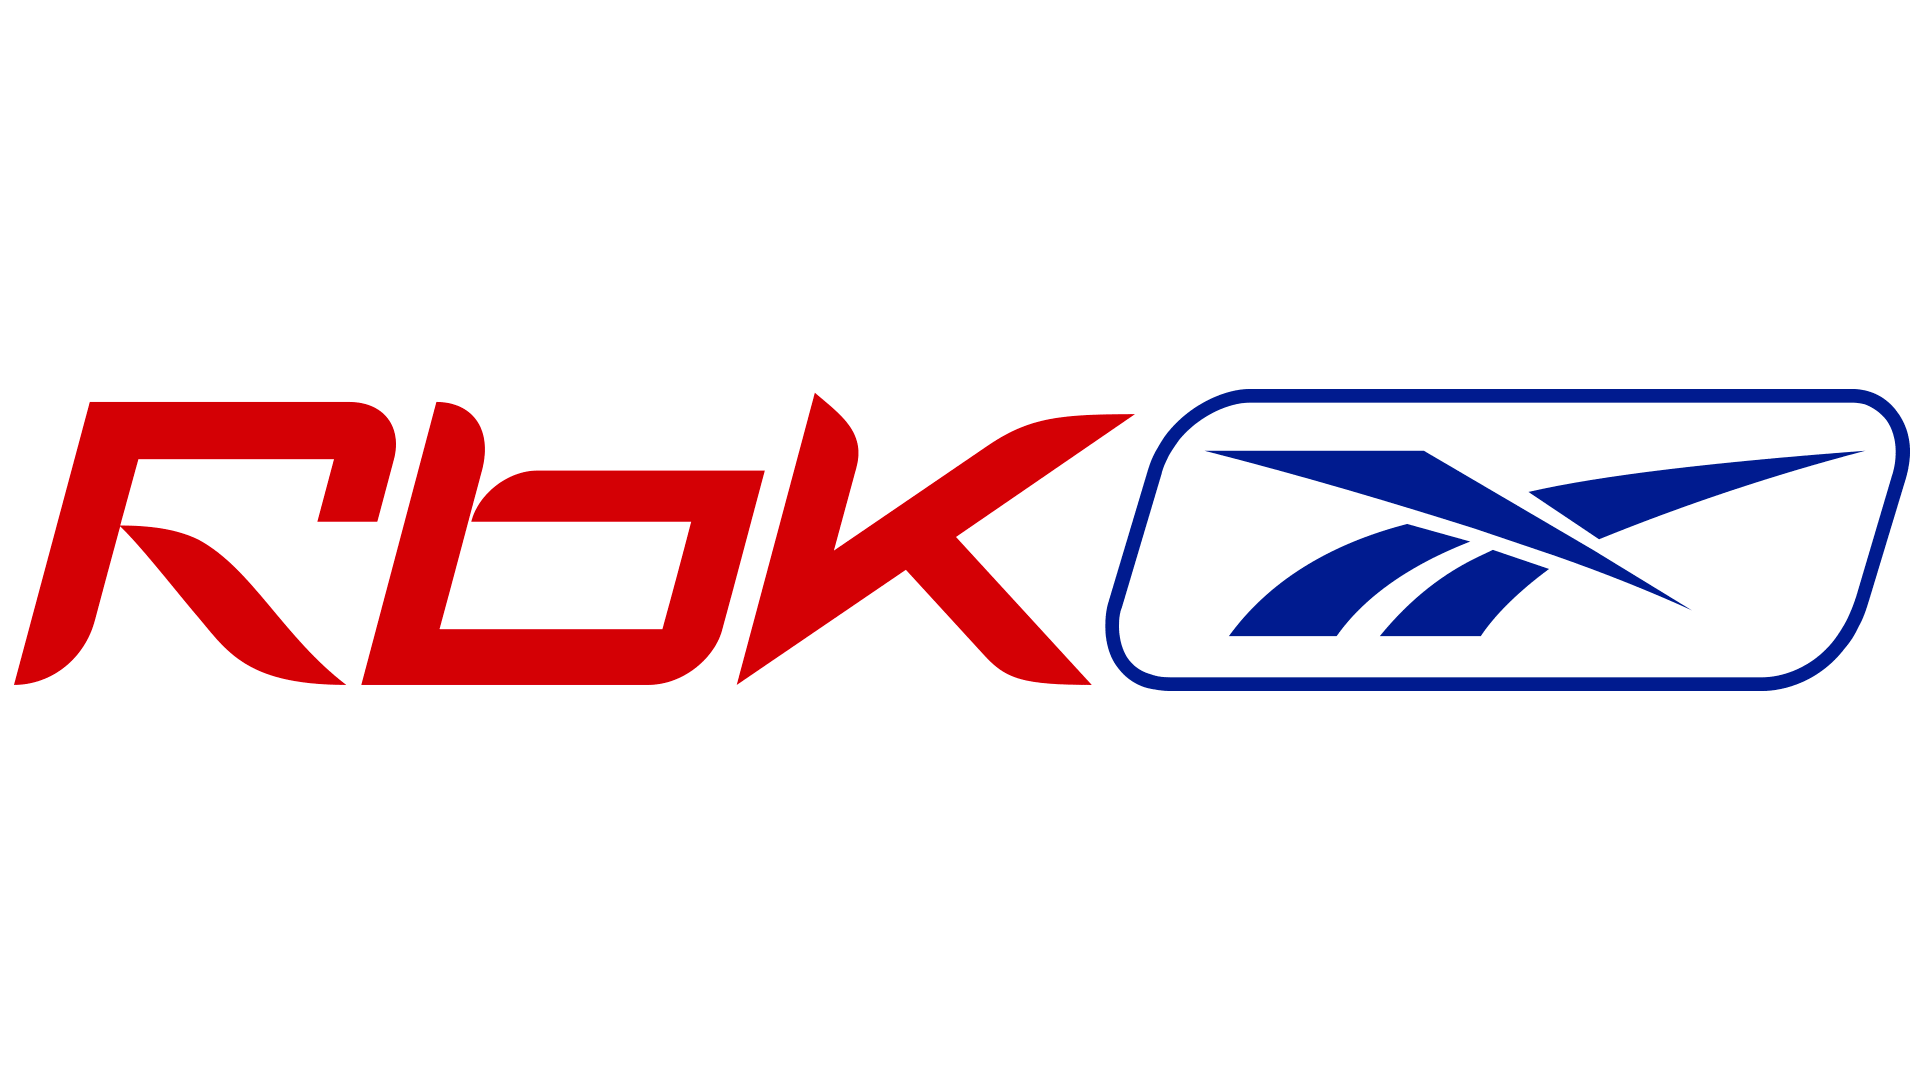 Soleado Canal enfocar Reebok Logo y símbolo, significado, historia, PNG, marca